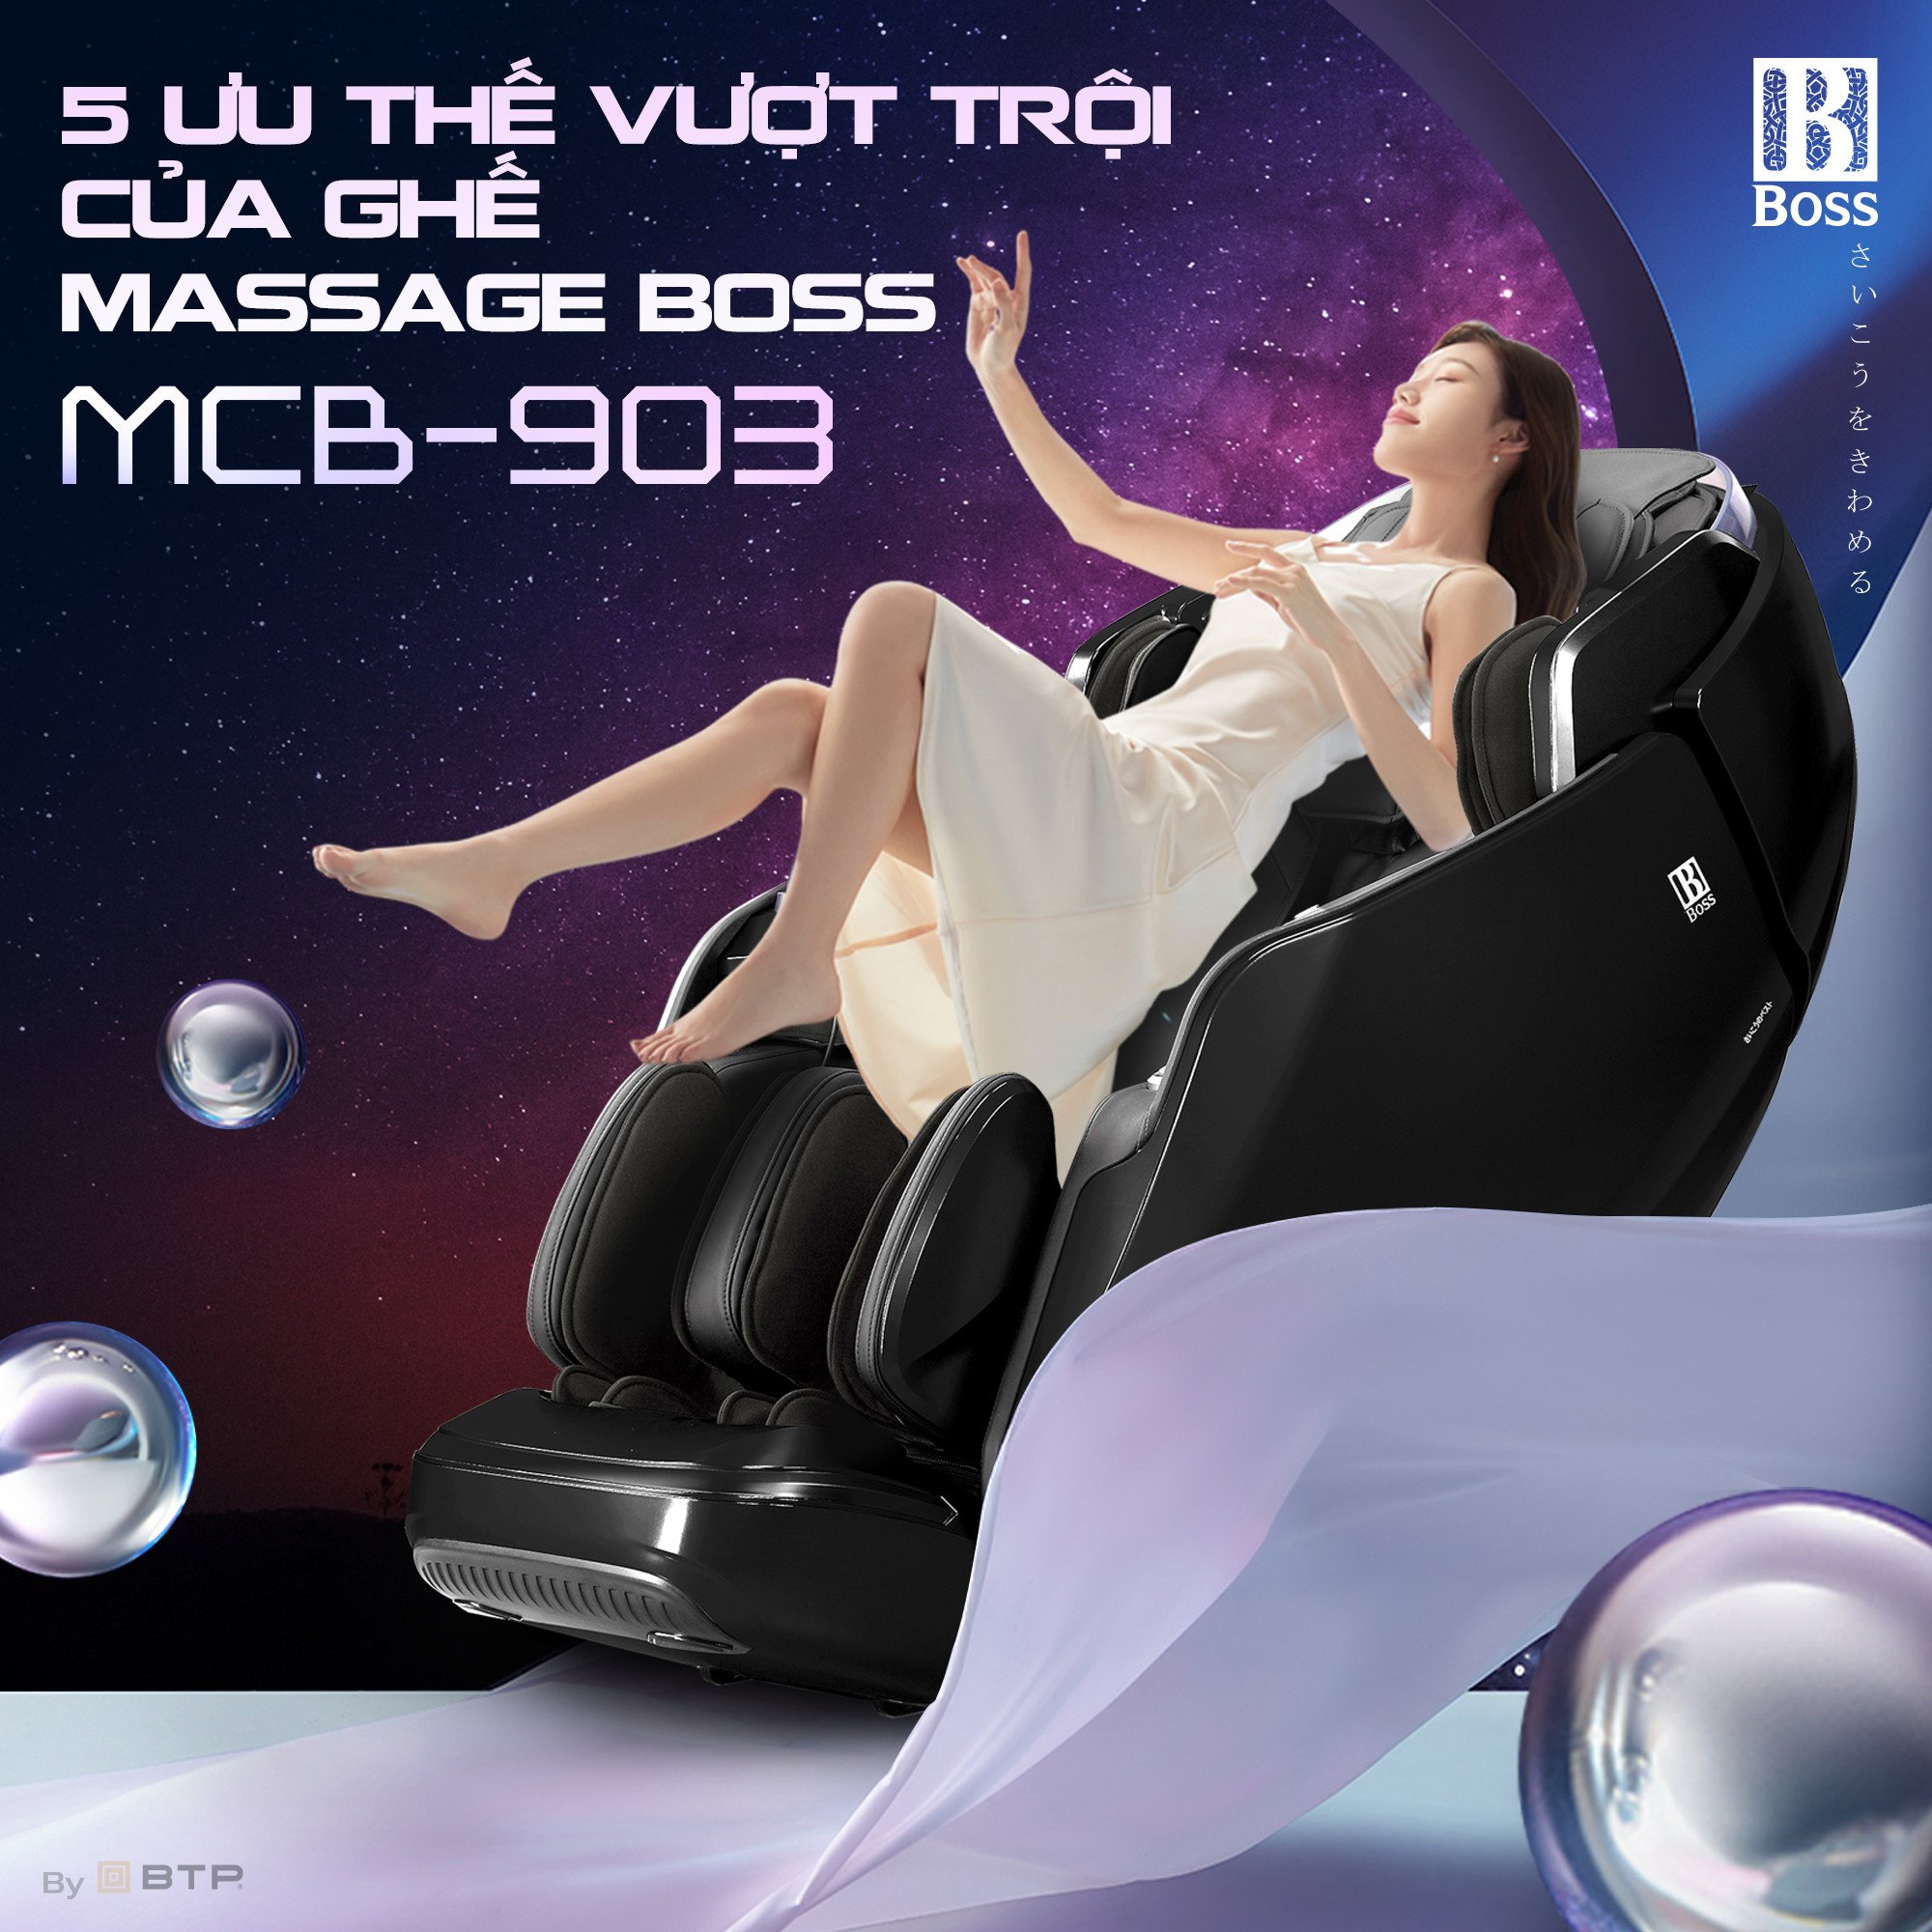 Ghế massage boss MCB-903 được tích hợp nhiều công nghệ hiện đại